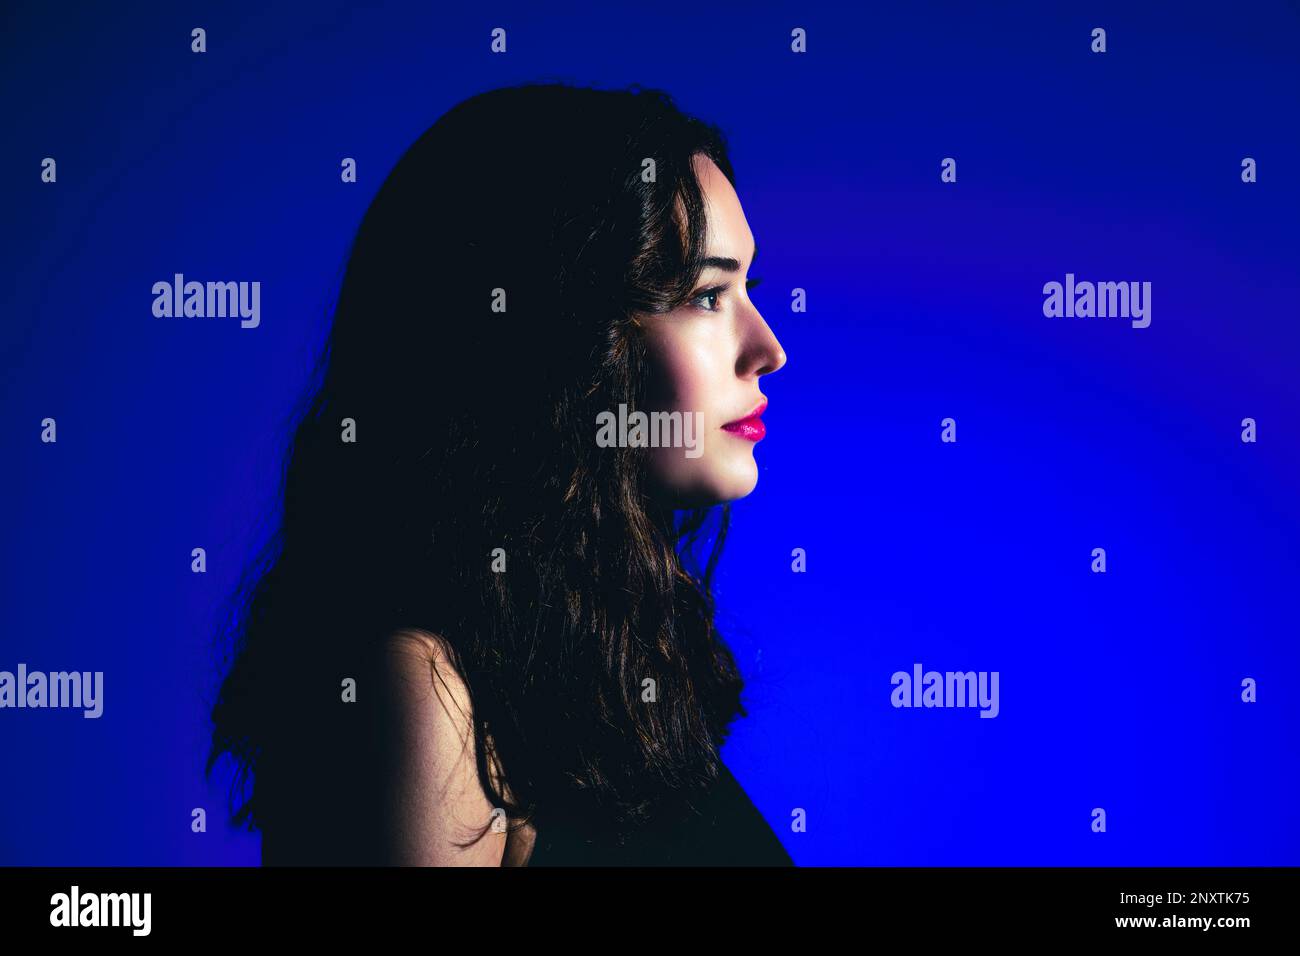 Gros plan sur le côté de la jeune femme dans le profil sur fond bleu | couleurs vives Banque D'Images